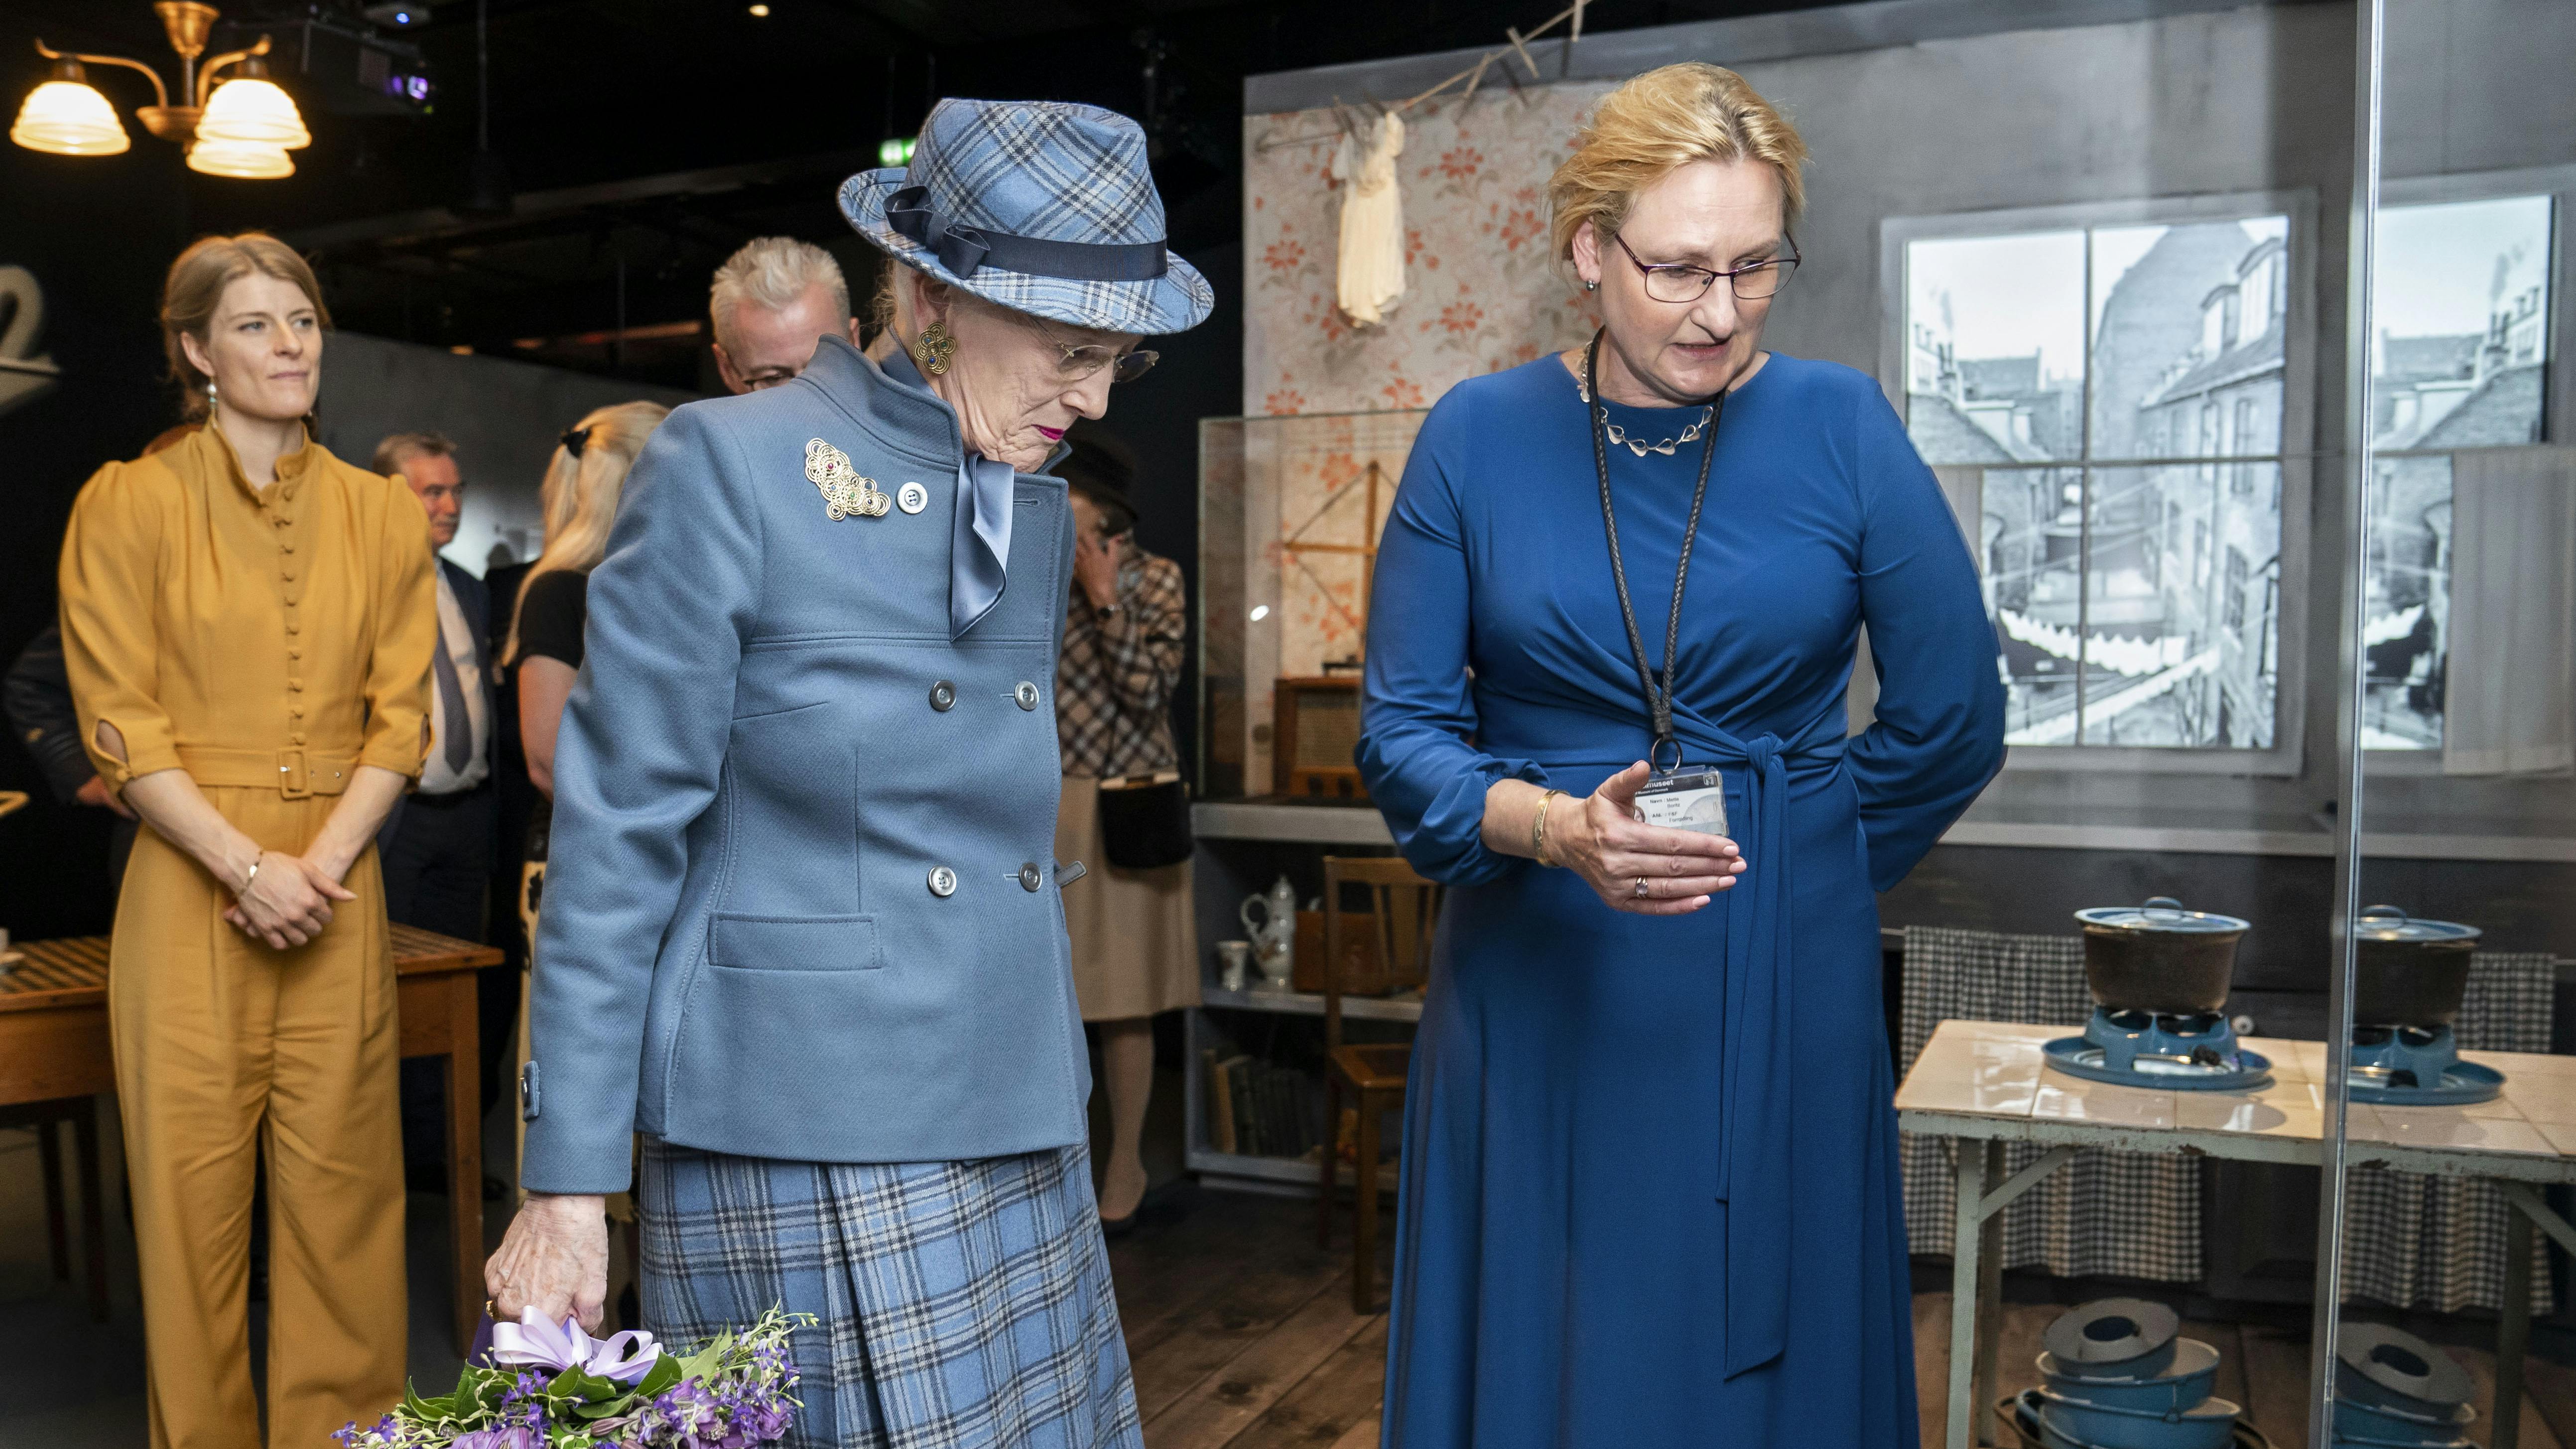 I 2021 var dronning Margrethe med til den officielle indvielsen af Frihedsmuseet. I år fejrer Frihedsmuseet den 5. maj ved at give fri entré på museet til alle med navnet Kirsten eller Erik.